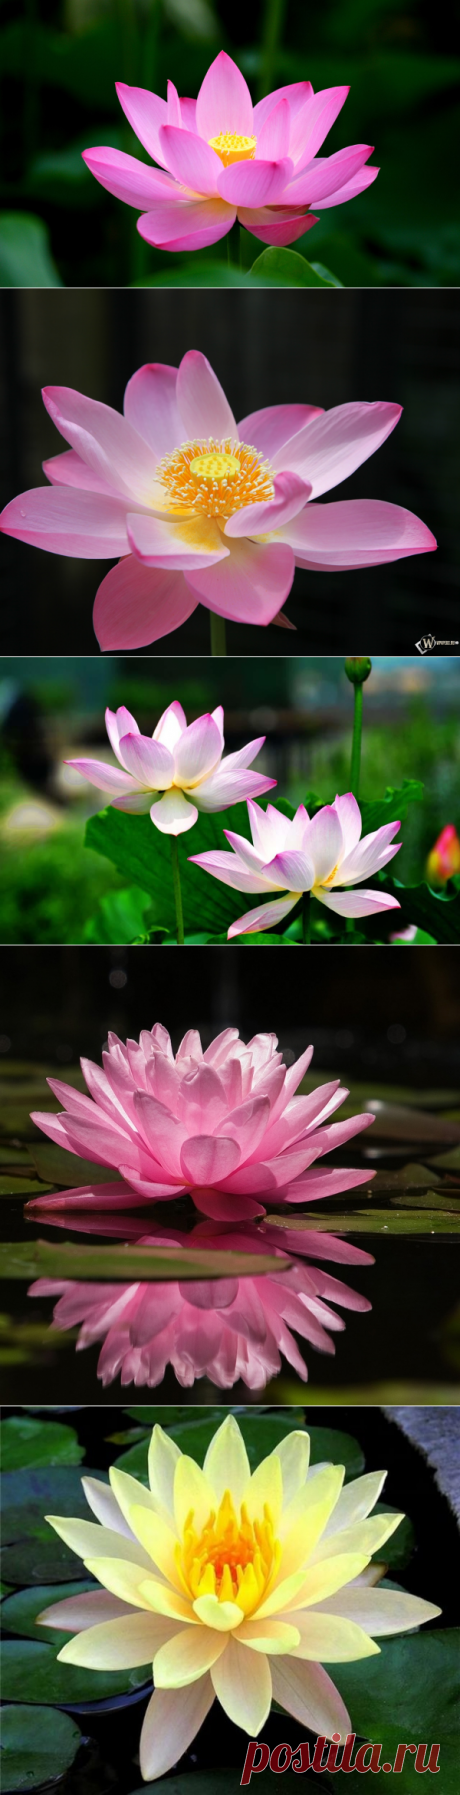 Лотос: совершенно красивый цветок